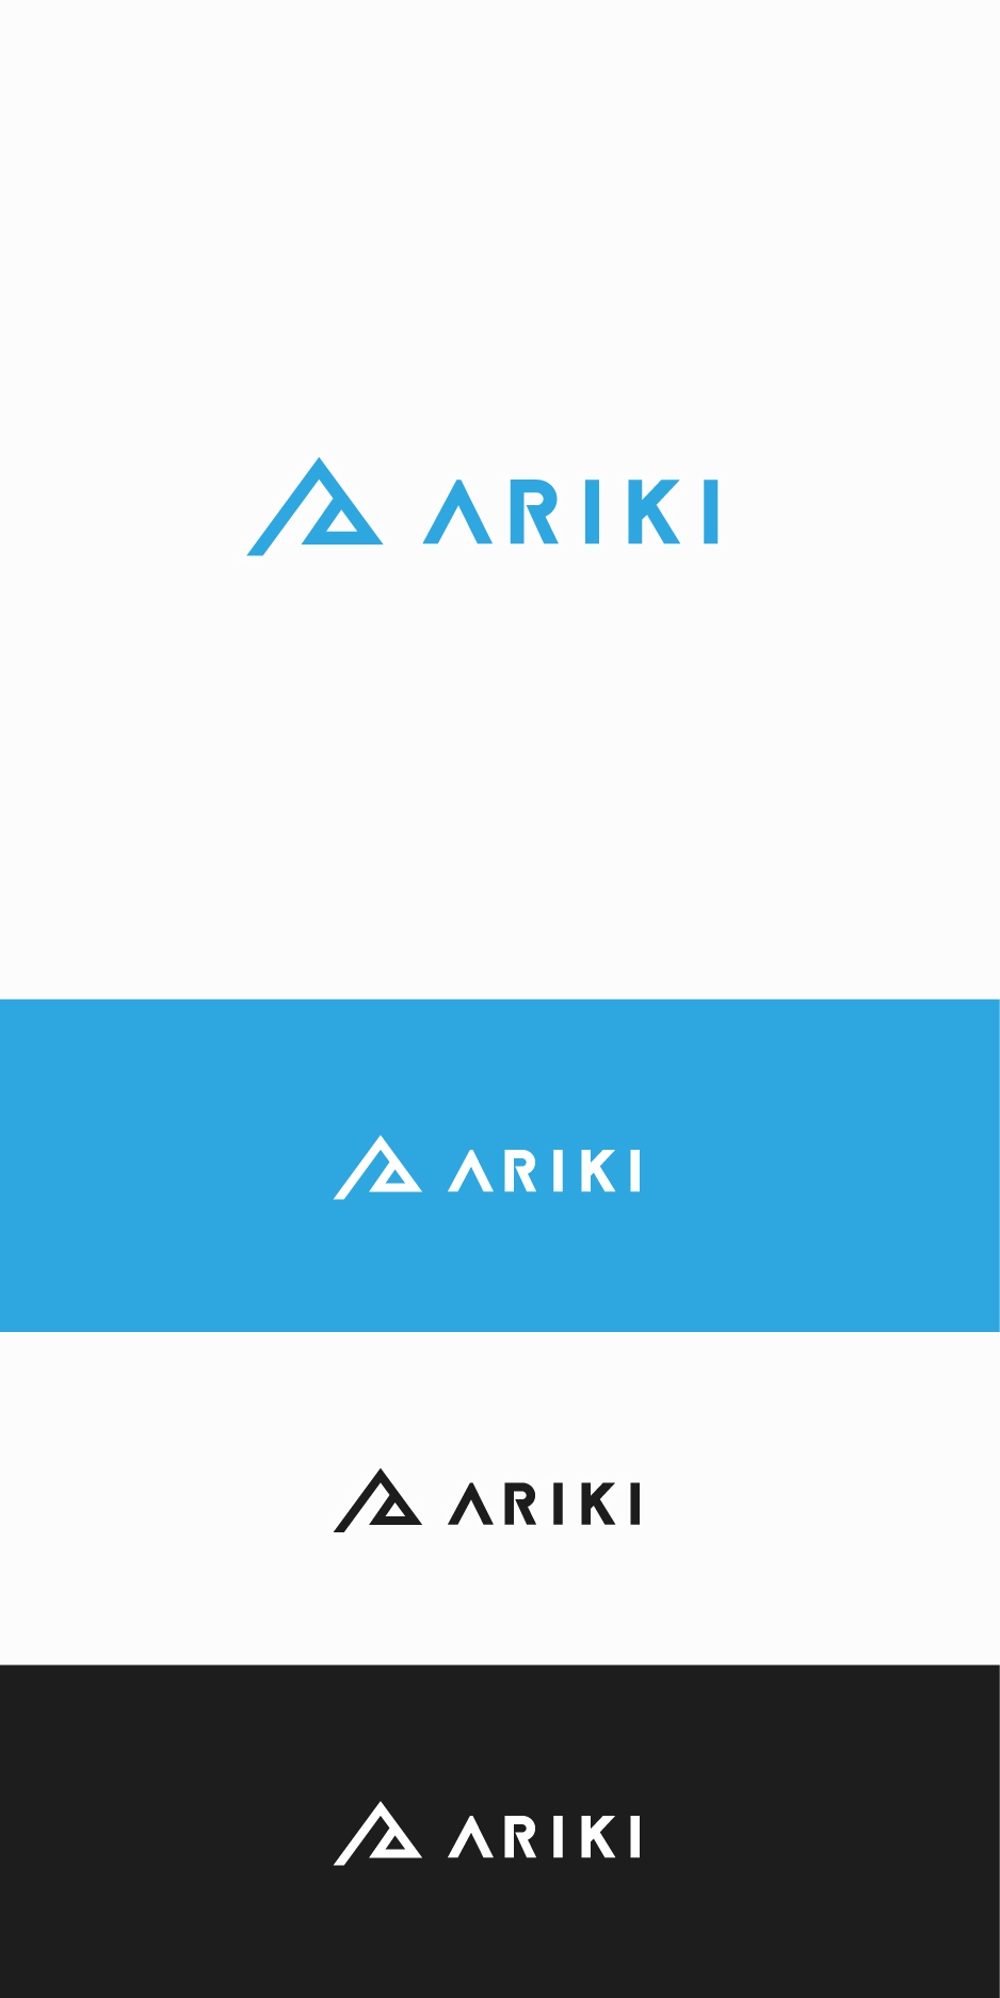 社名『株式会社ARIKI』のロゴの仕事